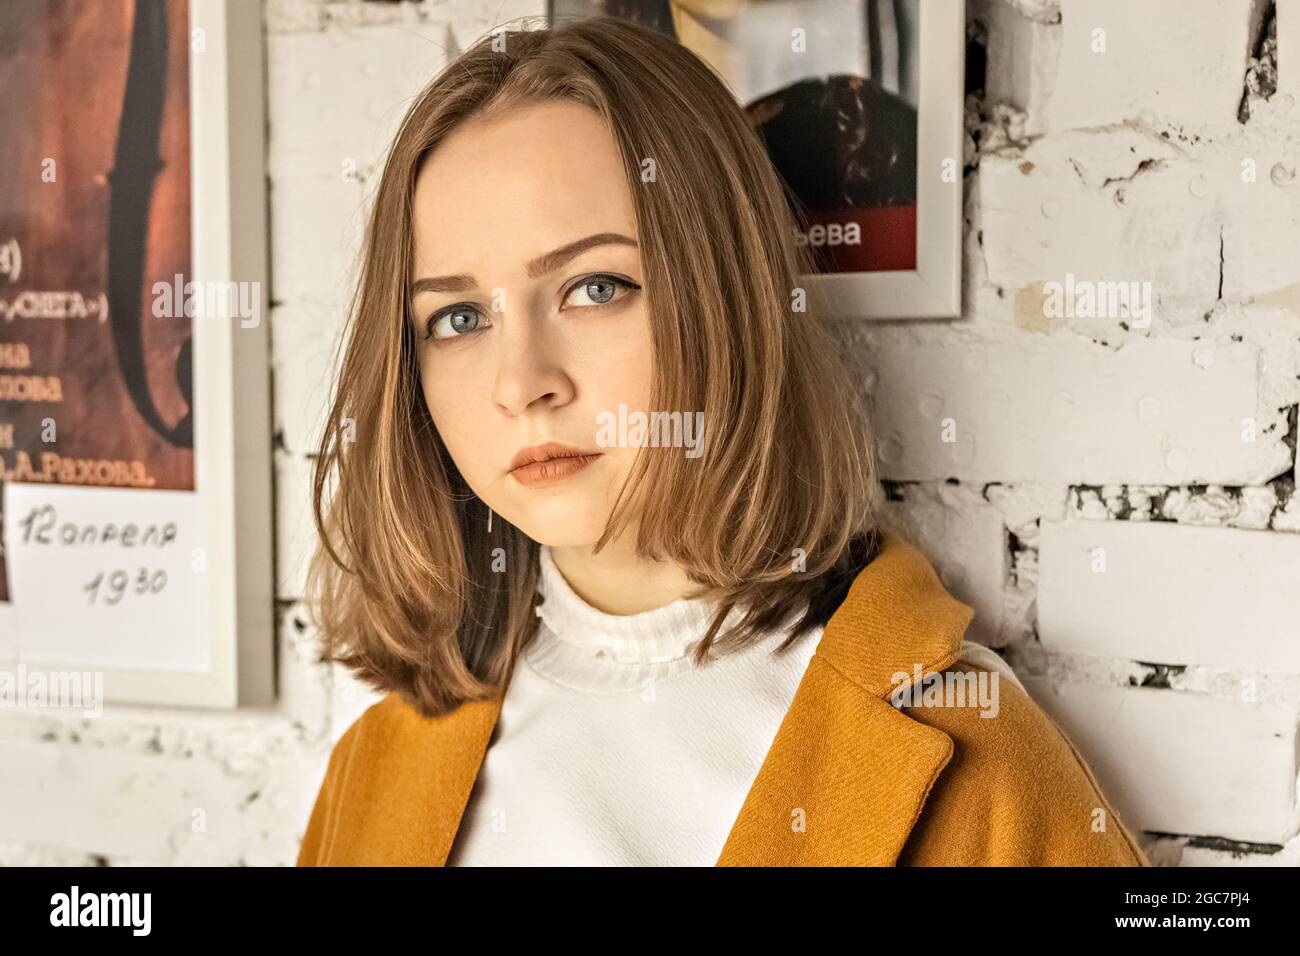 Ritratto di una giovane adolescente contro una parete bianca di mattoni con un poster. Foto Stock